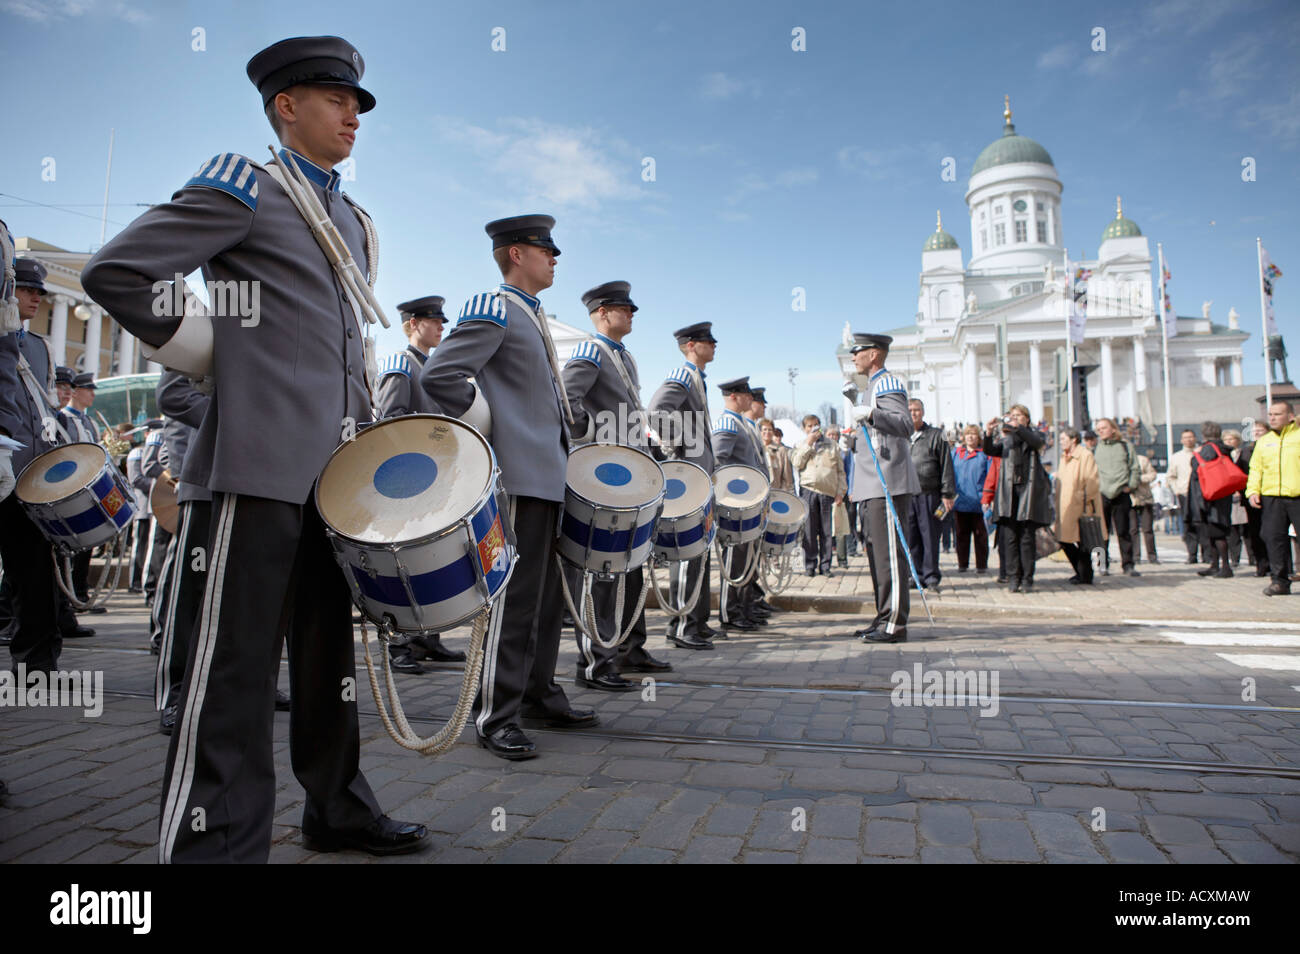 Desfile de música militar durante el partido de Helsinki, la Plaza del Senado, Helsinki, Finlandia Foto de stock